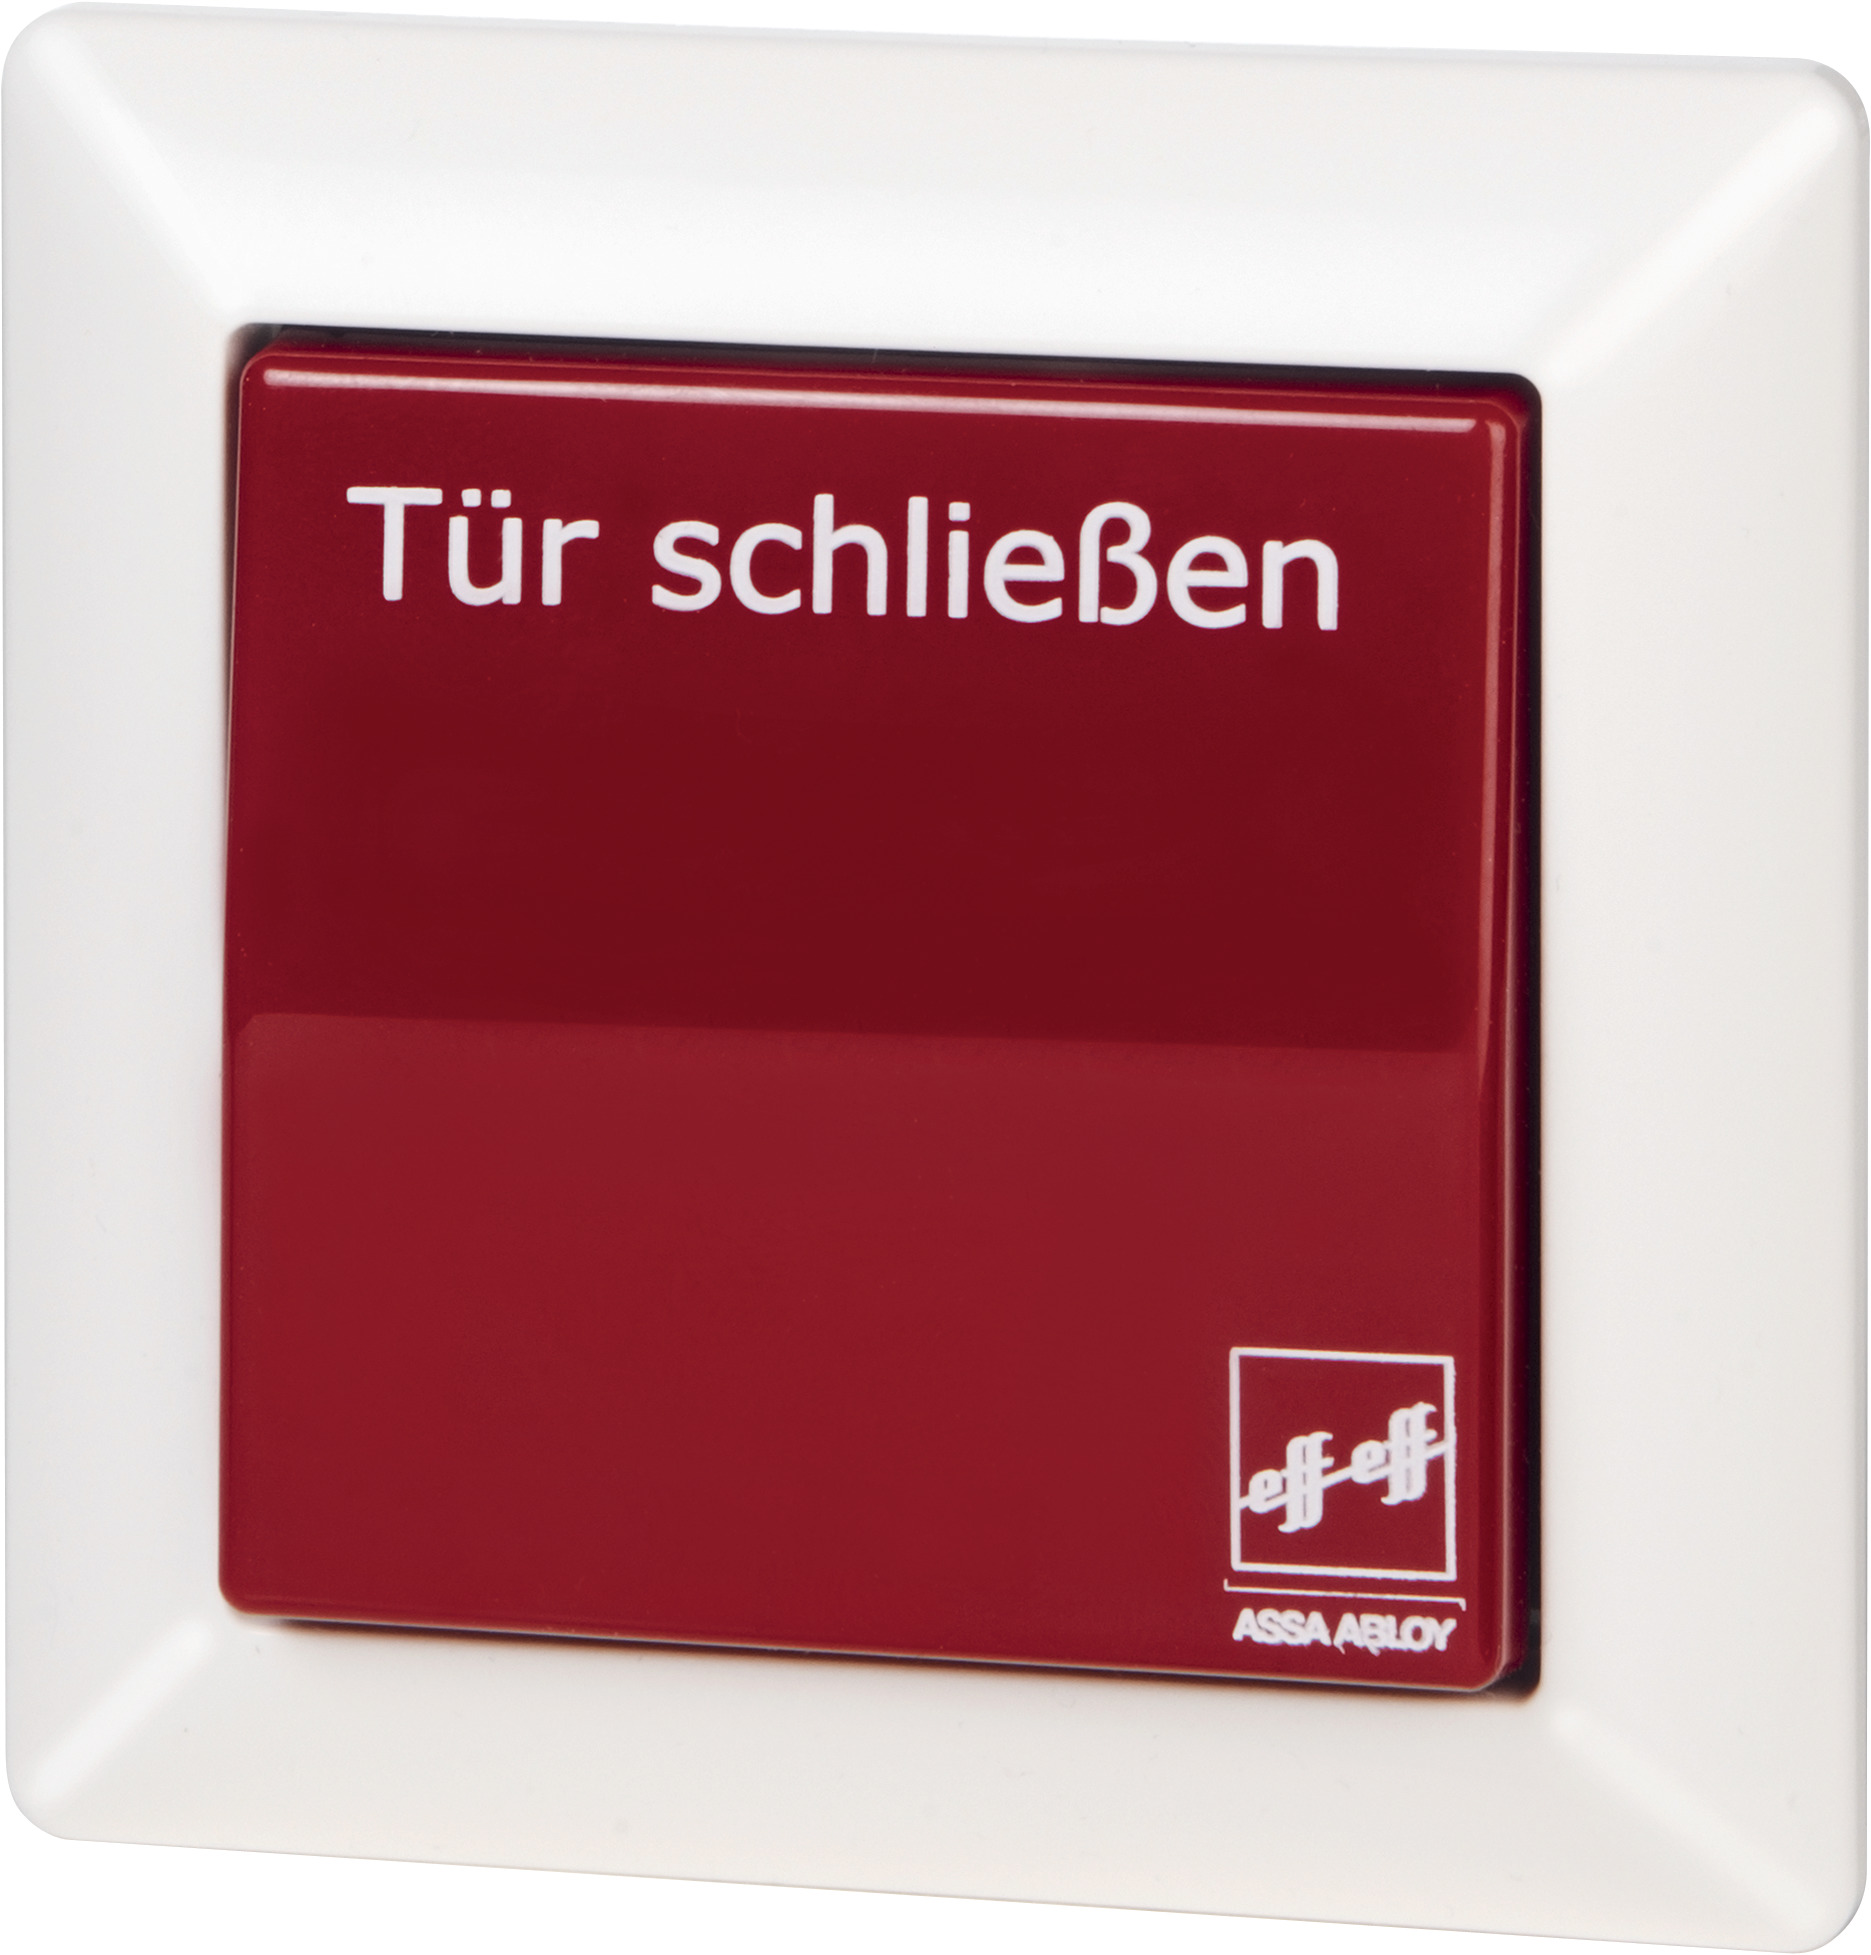 Встраиваемая пусковая кнопка 1317-10  Встраиваемая кнопка прерывателя красного цвета с надписью „Закрыть дверь“. Для управления элементами замка, для разблокировки которых необходимо снять напряжение, а именно удерживающих магнитов, электромеханических защелок, а также ручного переключателя/регулятора защитных систем. Выключатель перекидного типа